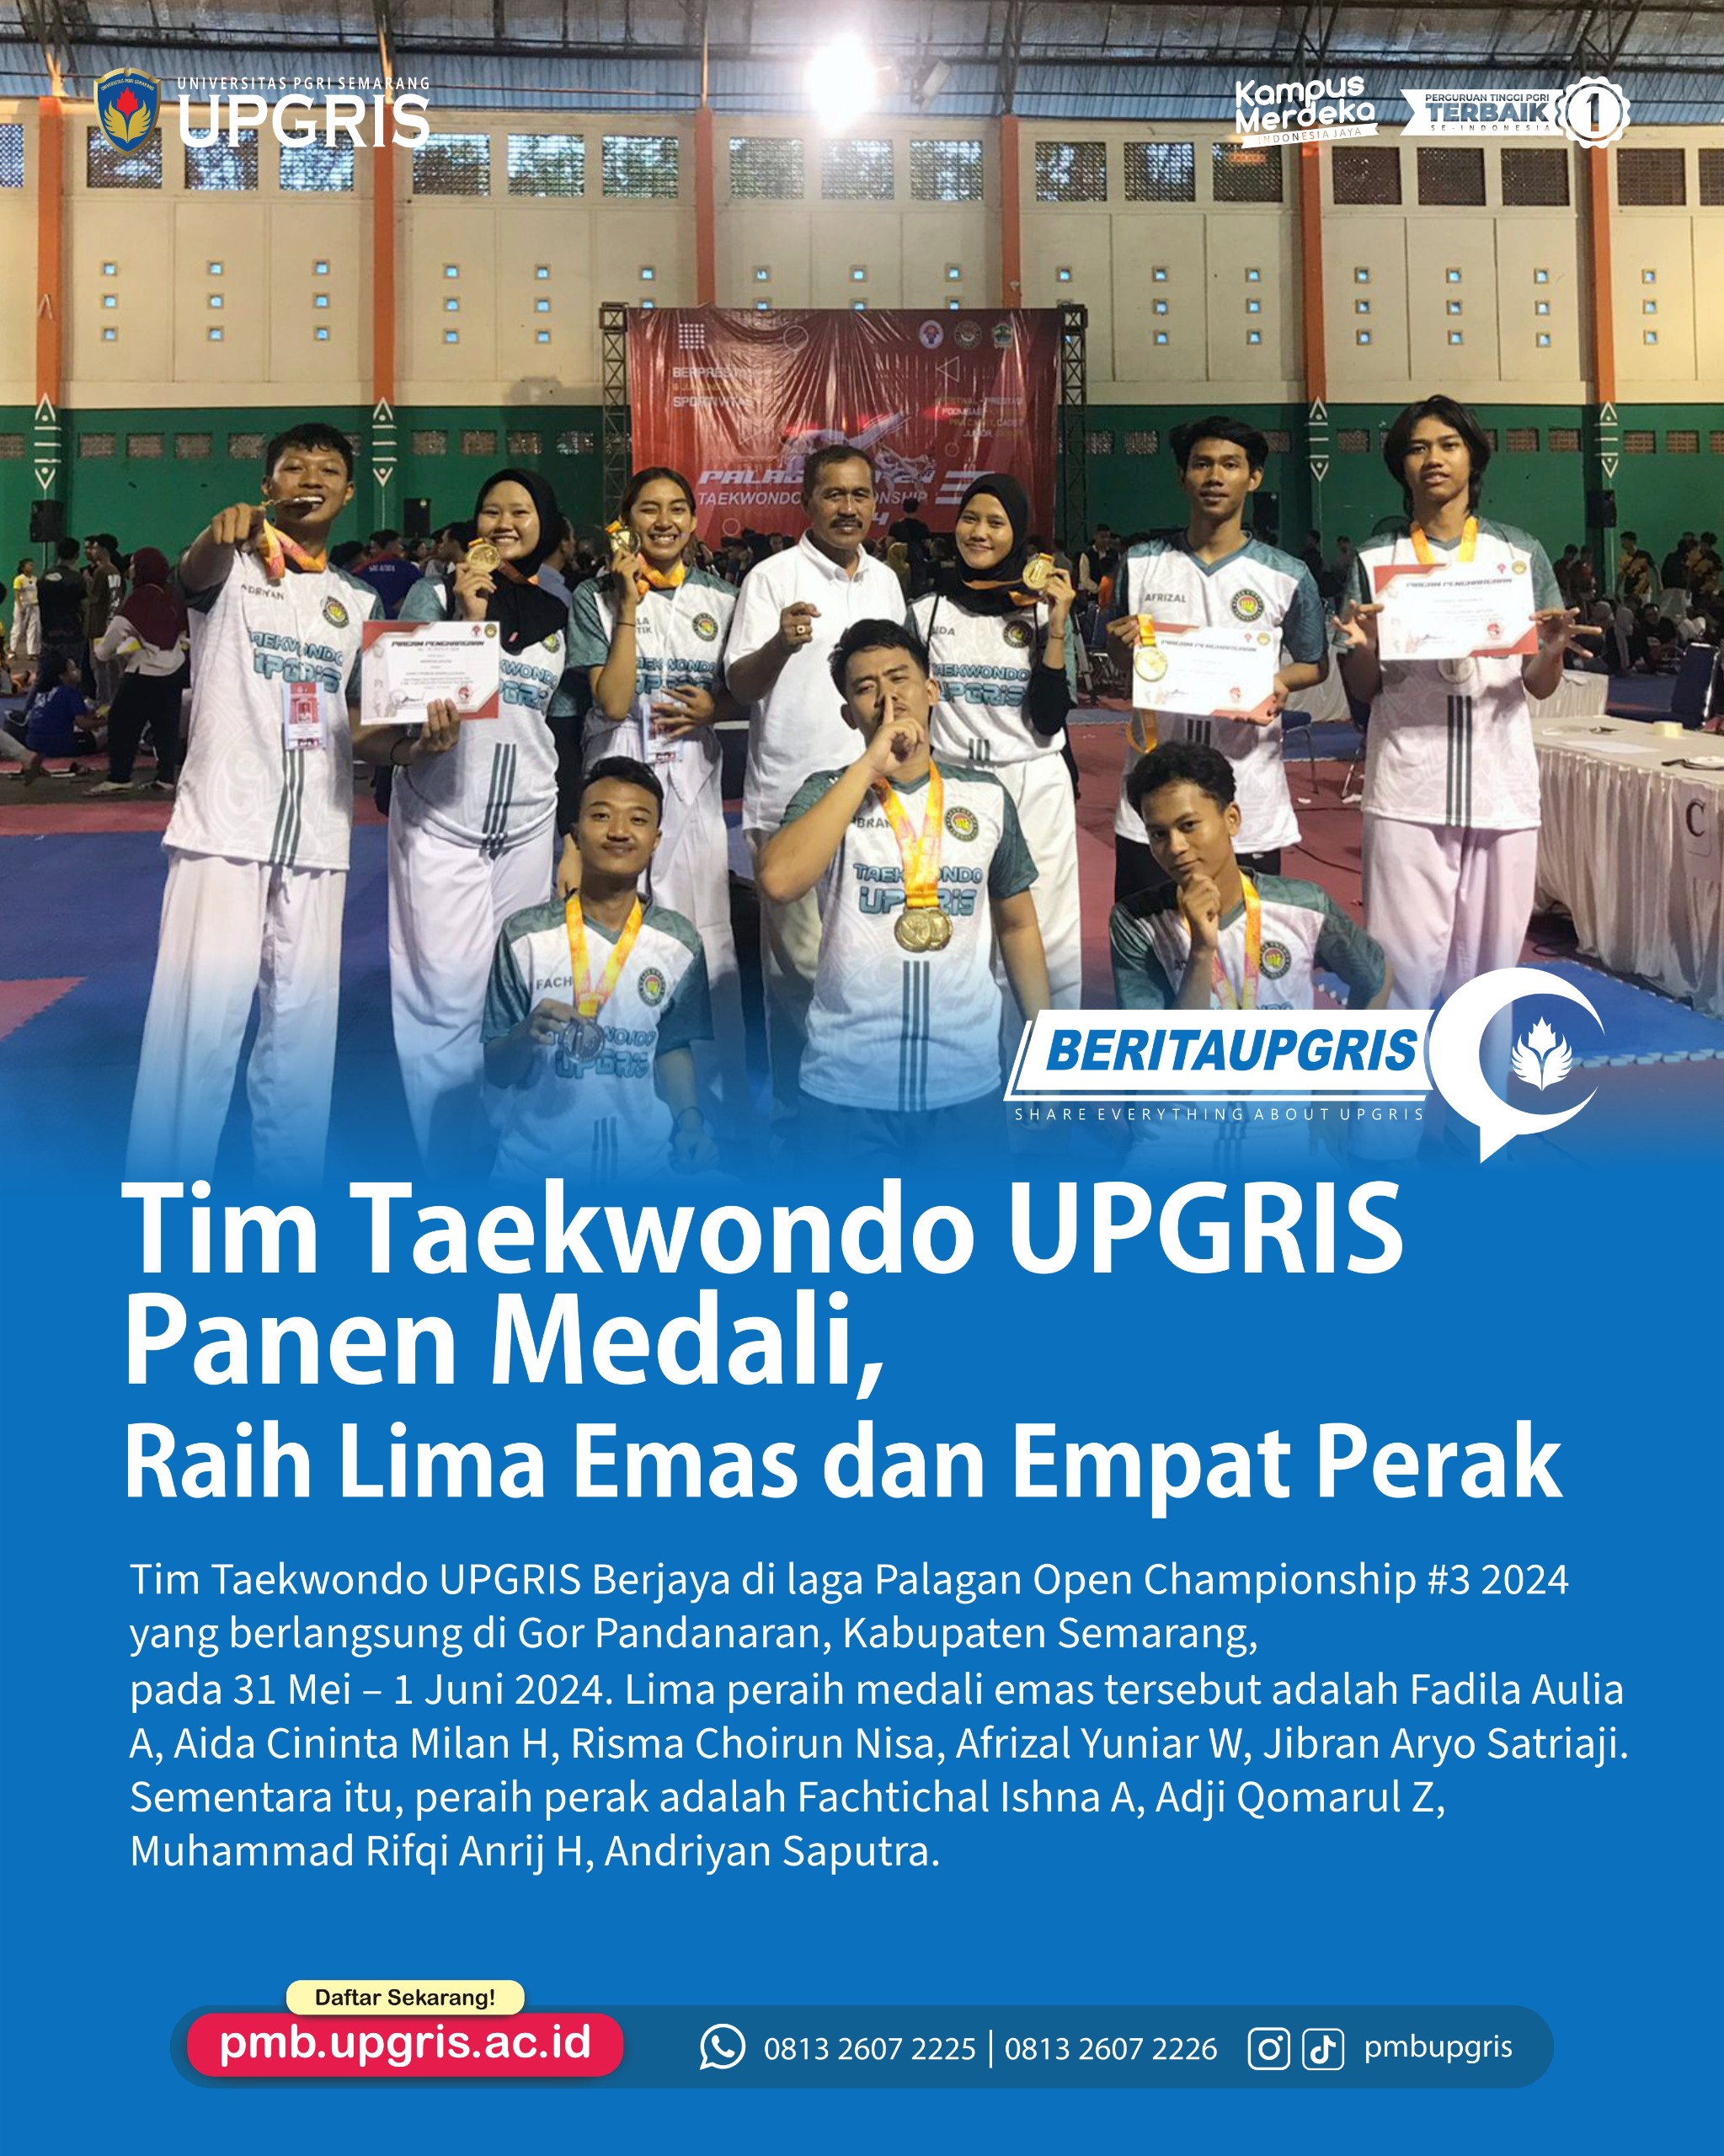 Tim Taekwondo UPGRIS Panen Medali di Palagan Open Championship #3